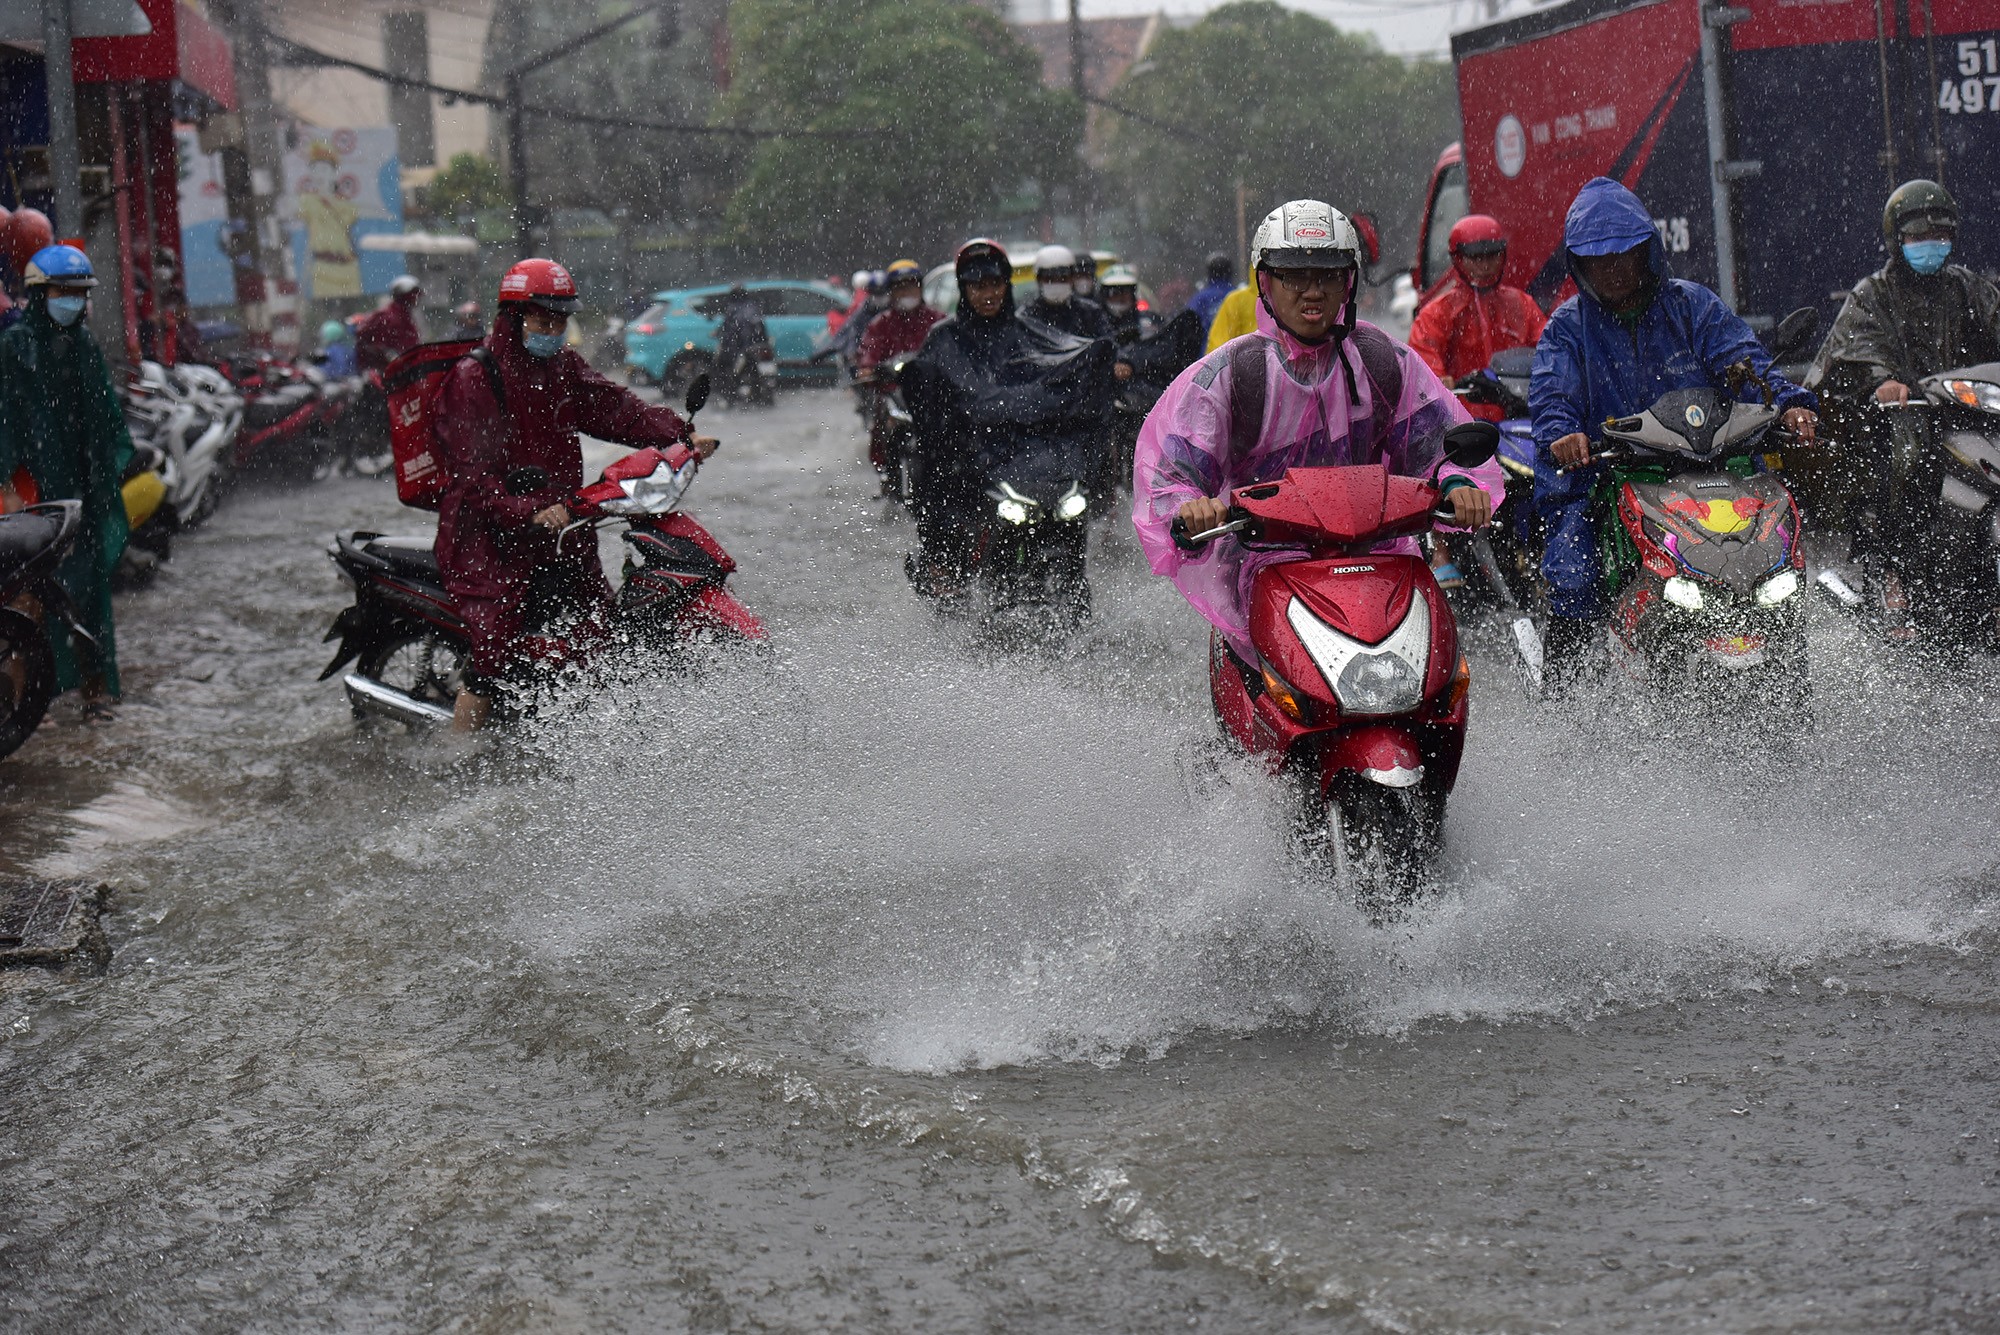 Đường ở TP.HCM ngập sâu trong mưa lớn, nhiều người ngã nhào - 3